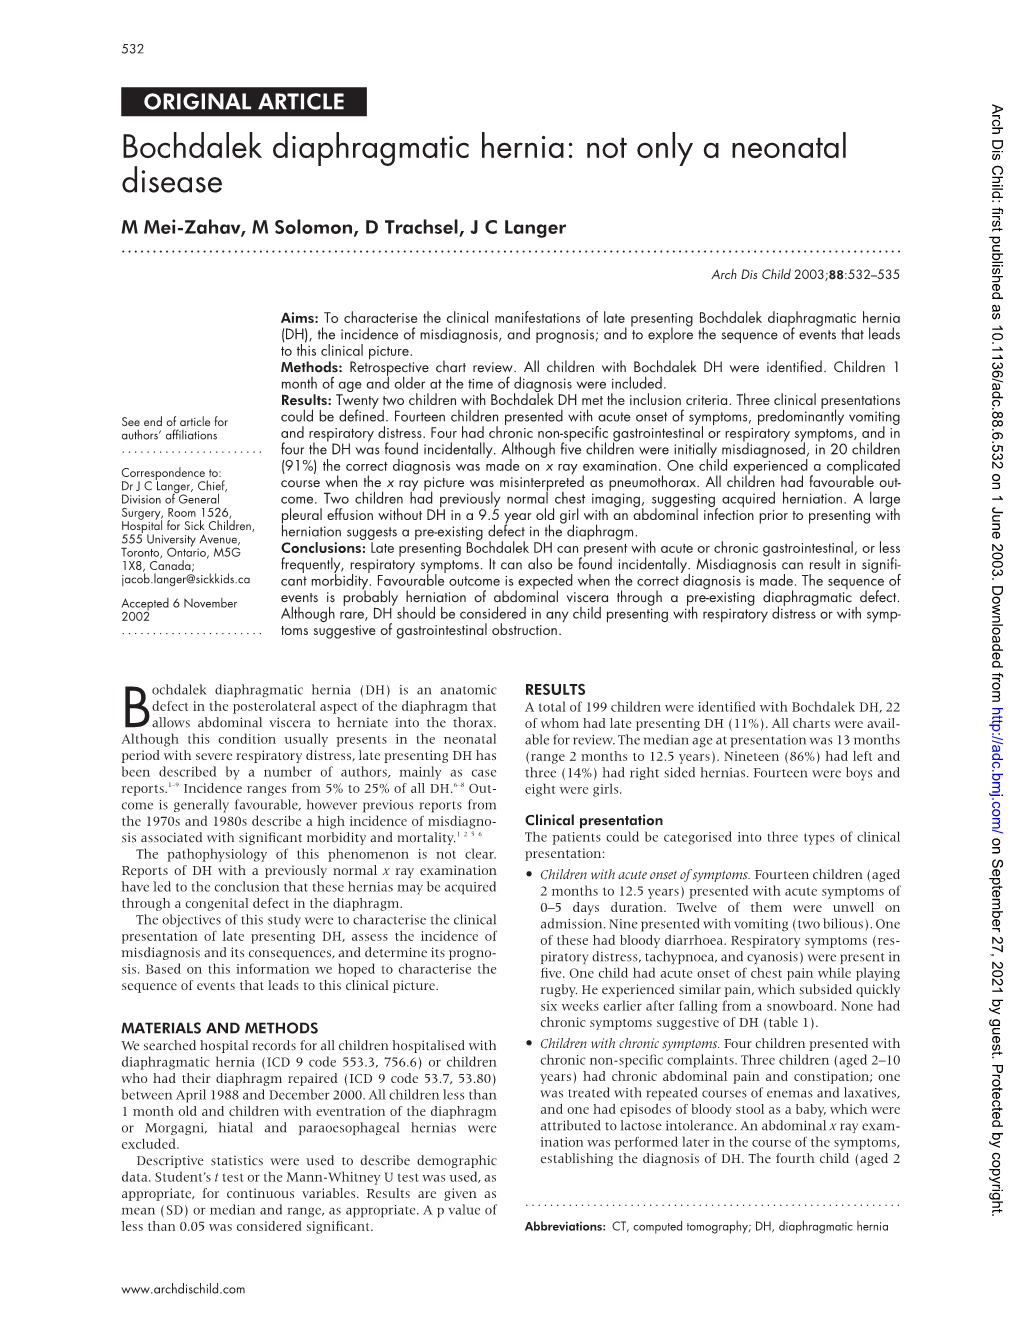 Bochdalek Diaphragmatic Hernia: Not Only a Neonatal Disease M Mei-Zahav, M Solomon, D Trachsel, J C Langer